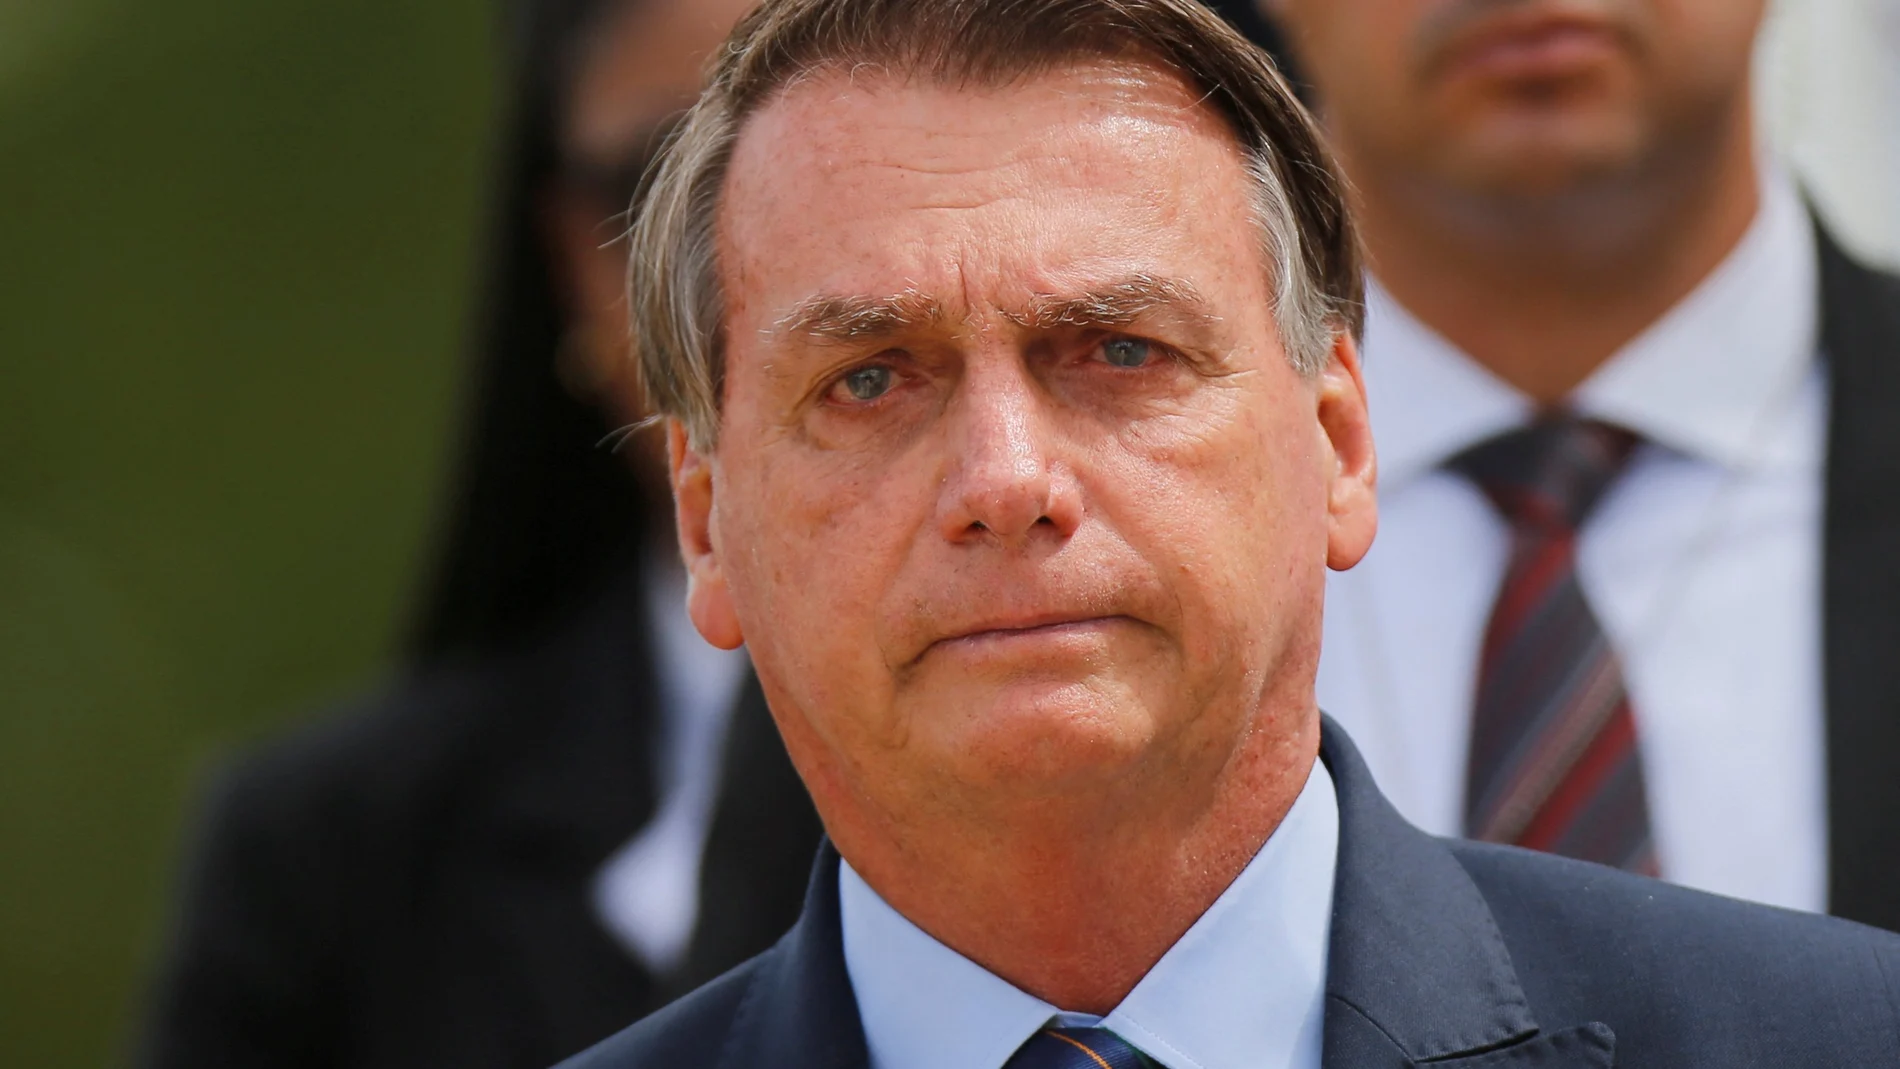 Las propuestas de acusación estuvieron basadas en las pruebas presentadas por la Comisión Parlamentaria de Investigación (CPI), que se encargó de analizar la gestióndel Gobierno de Bolsonaro